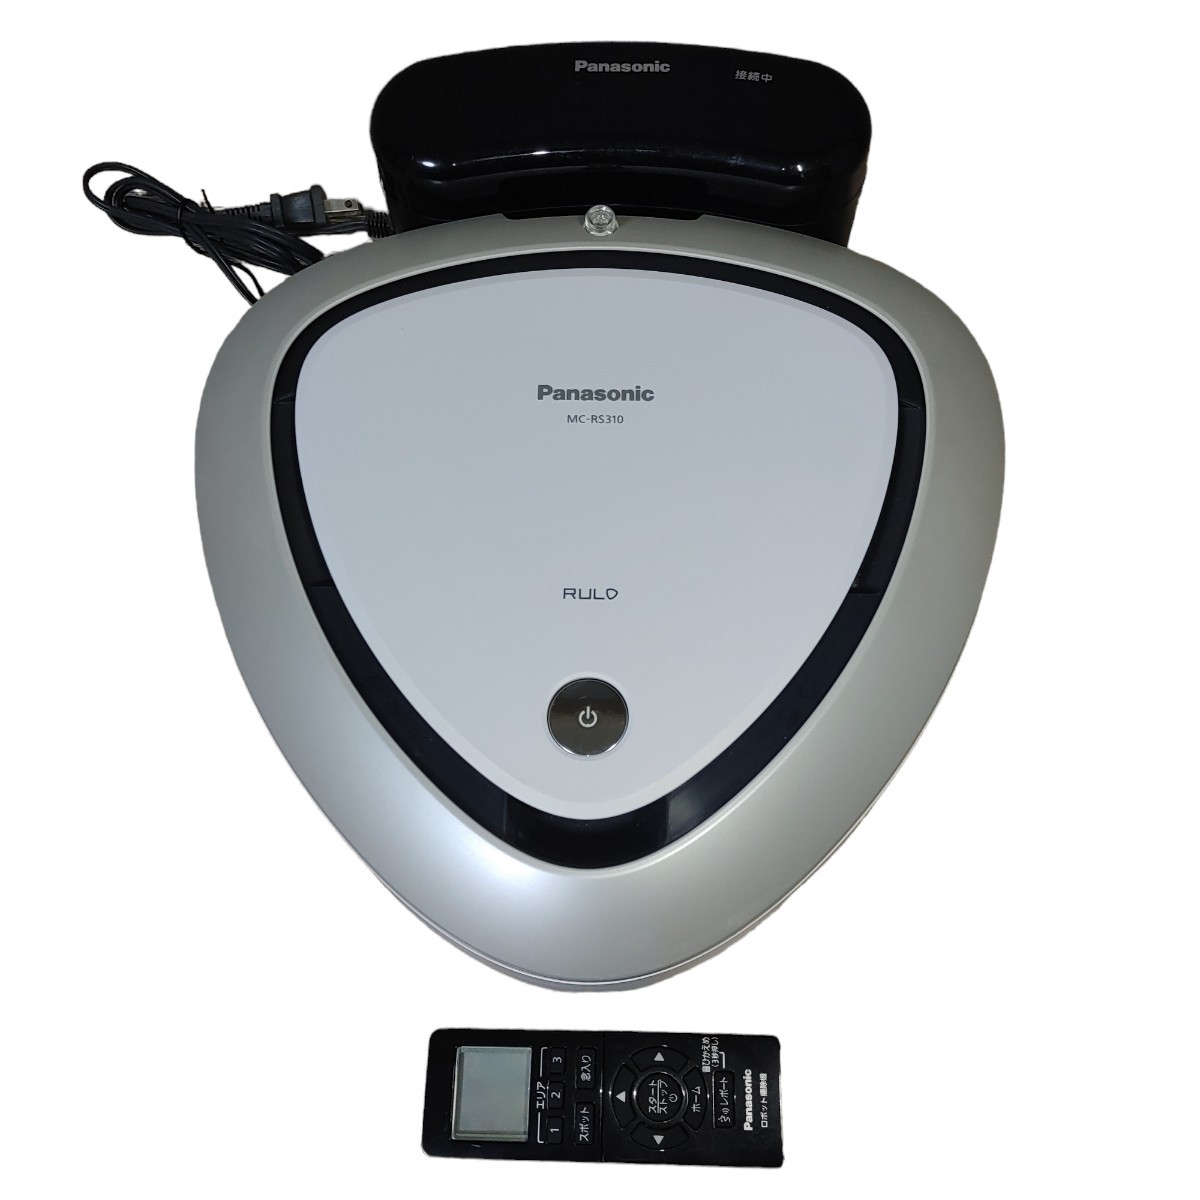 Panasonicロボット掃除機MC-RS310-W - 掃除機・クリーナー